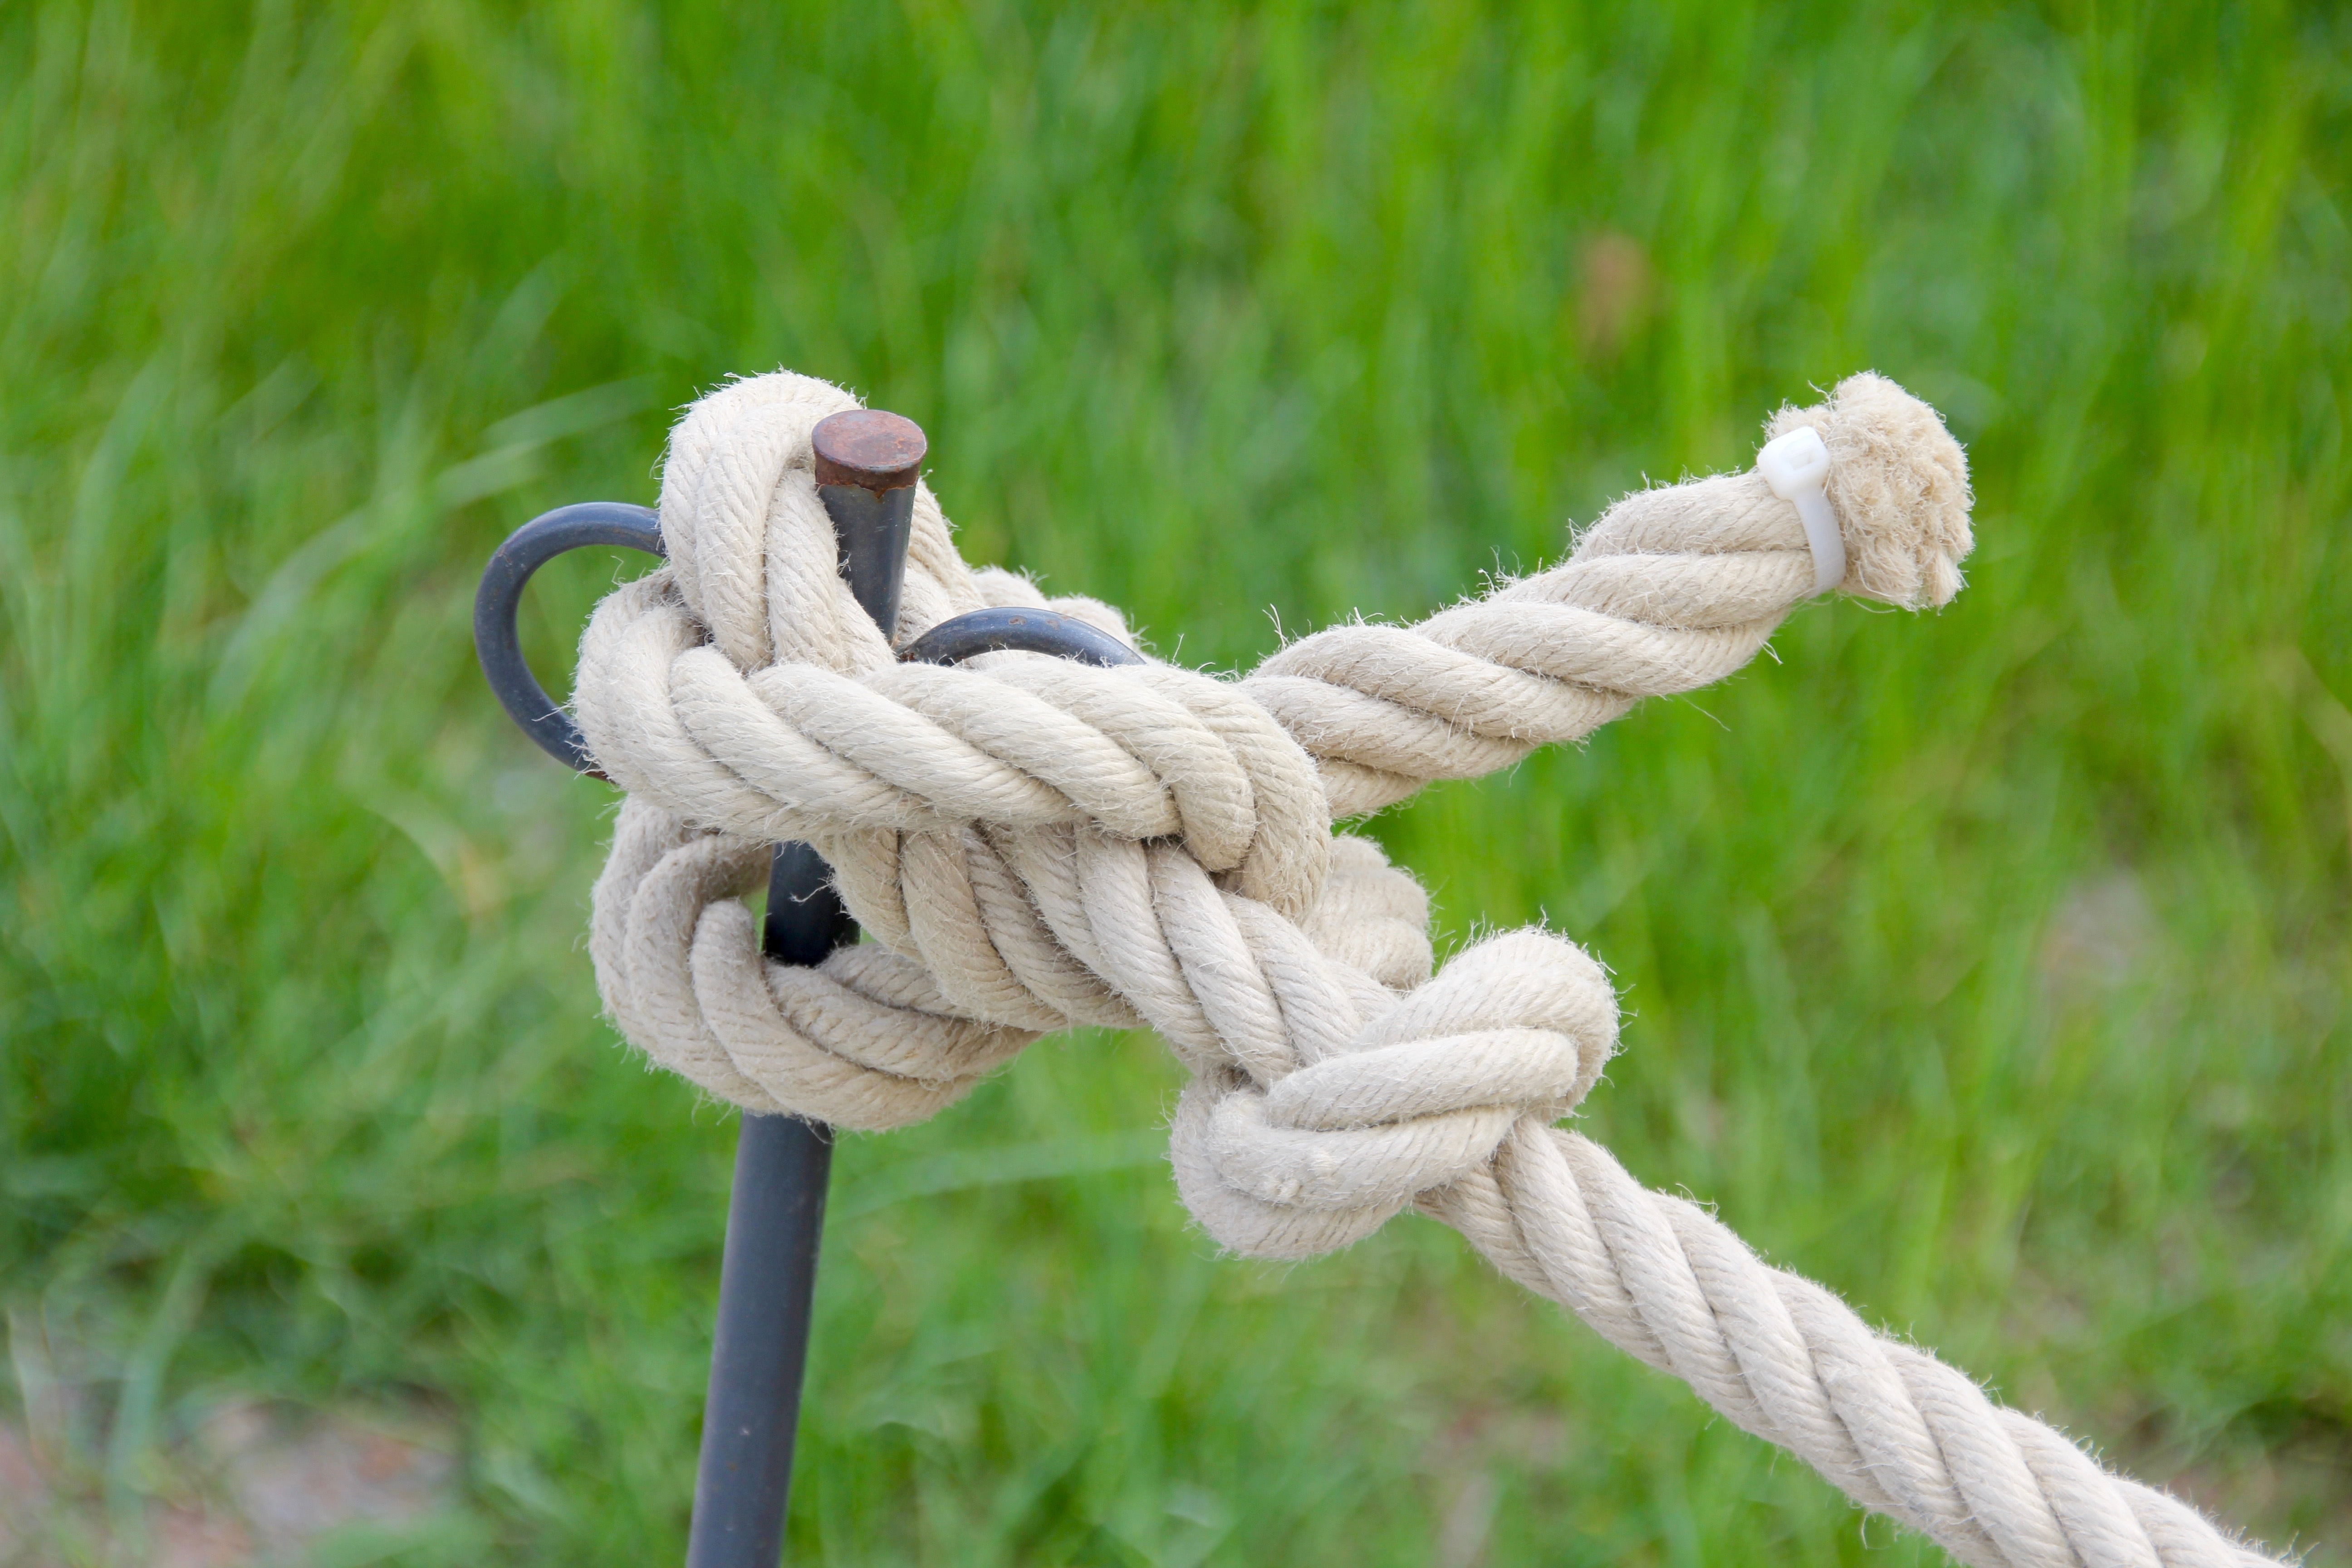 Aussie rope works